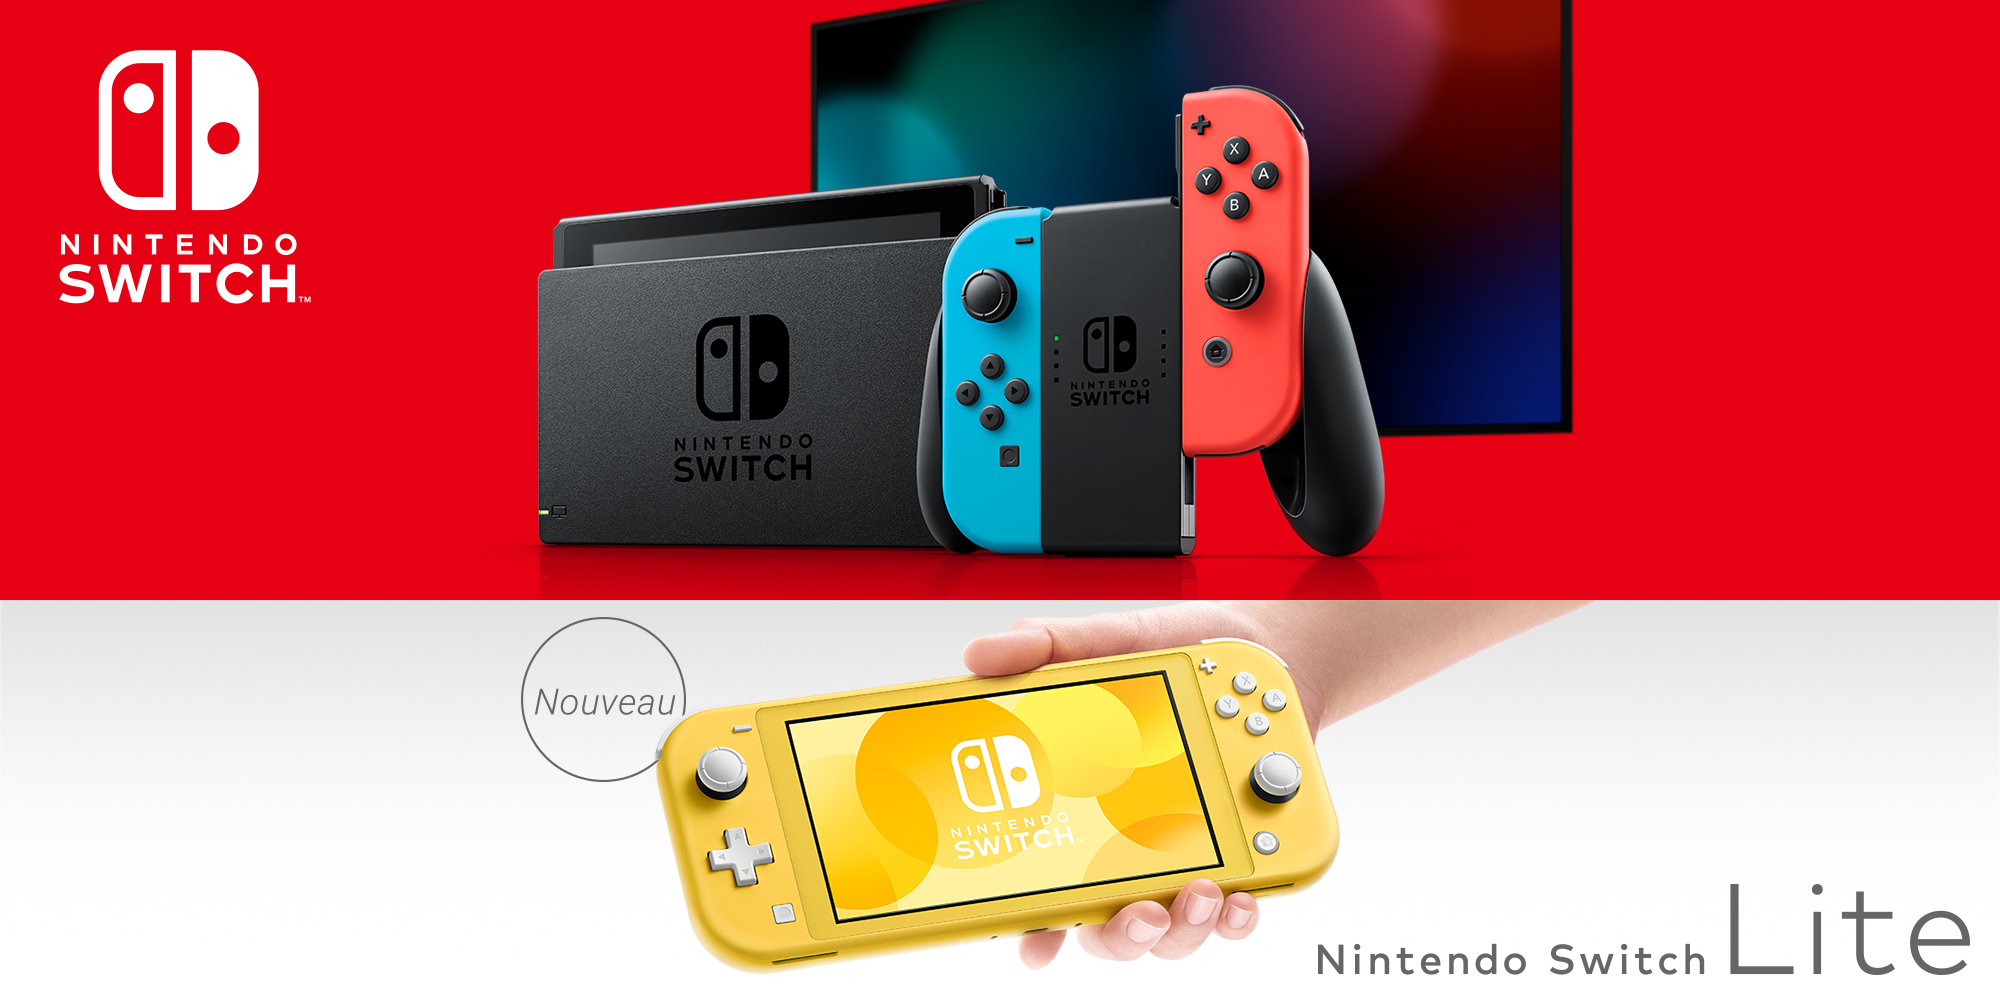 Nintendo Switch H2x1_NintendoSwitch_NintendoSwitchLite_Combo_frFR